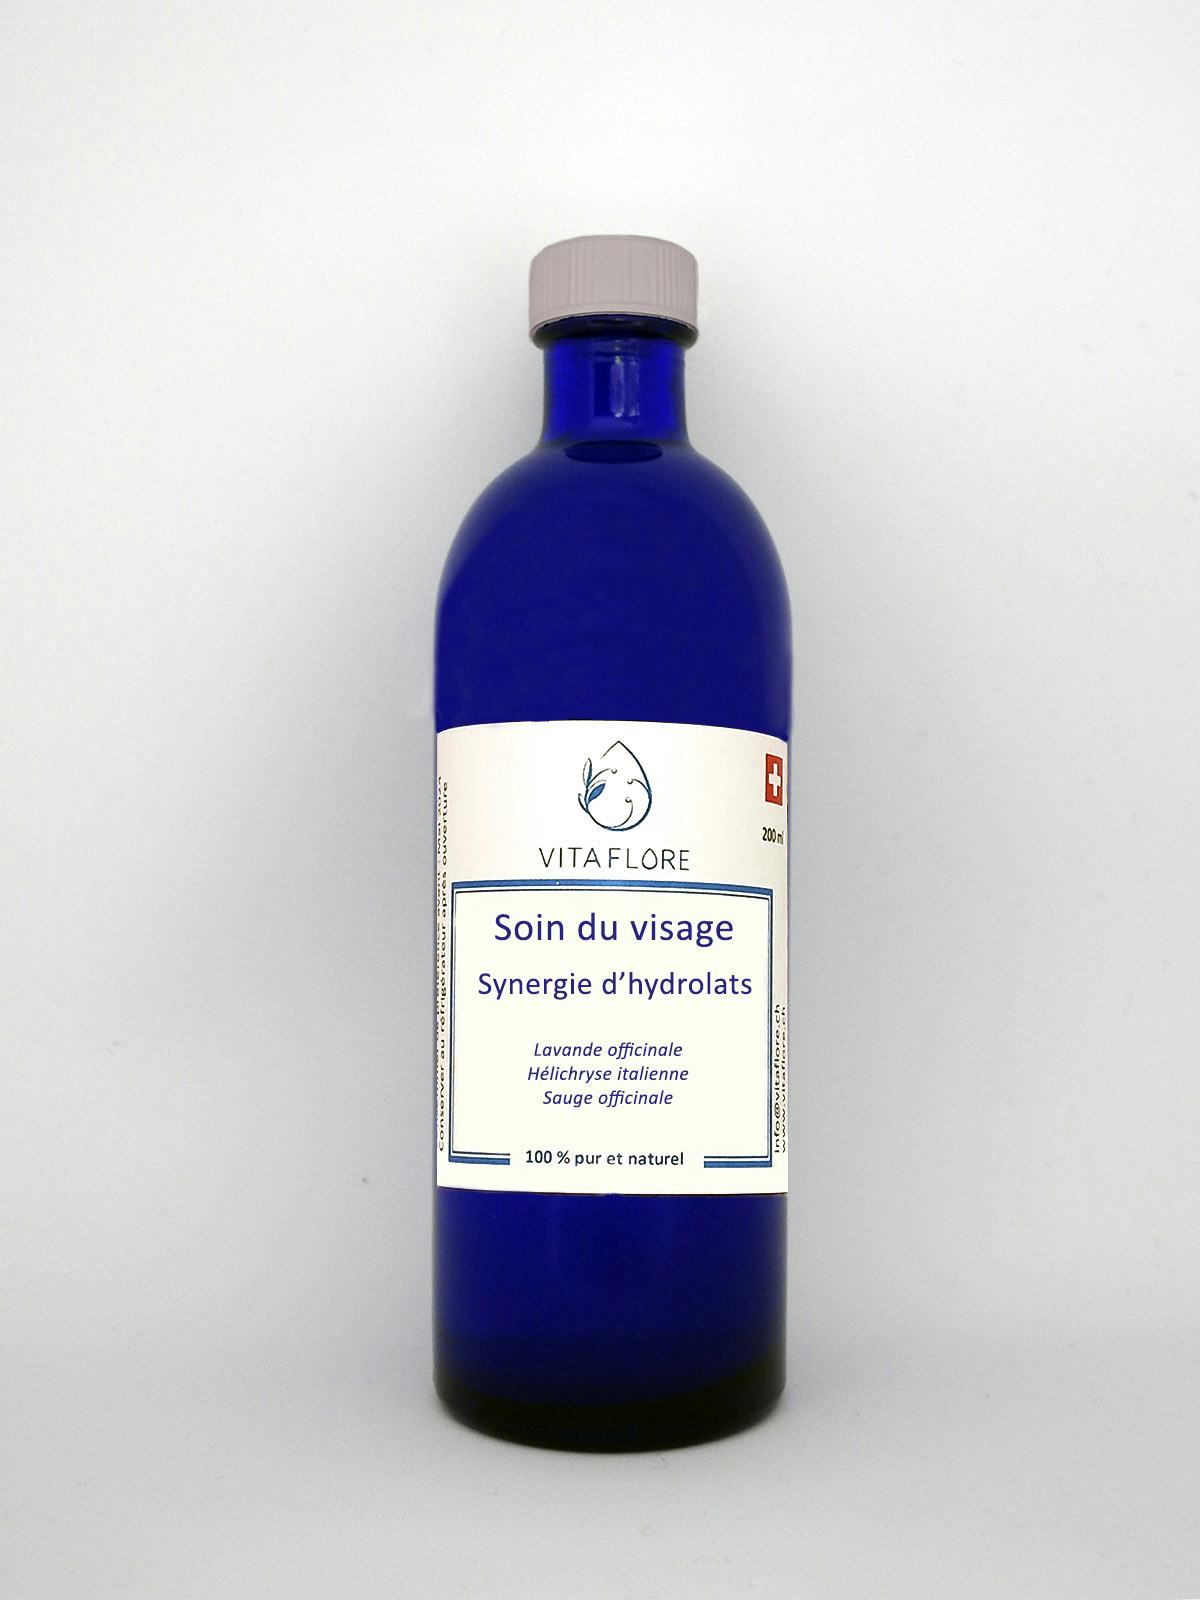 Synergie d’hydrolats – Soin du visage, handwerkliches Produkt für den Direktverkauf in der Schweiz